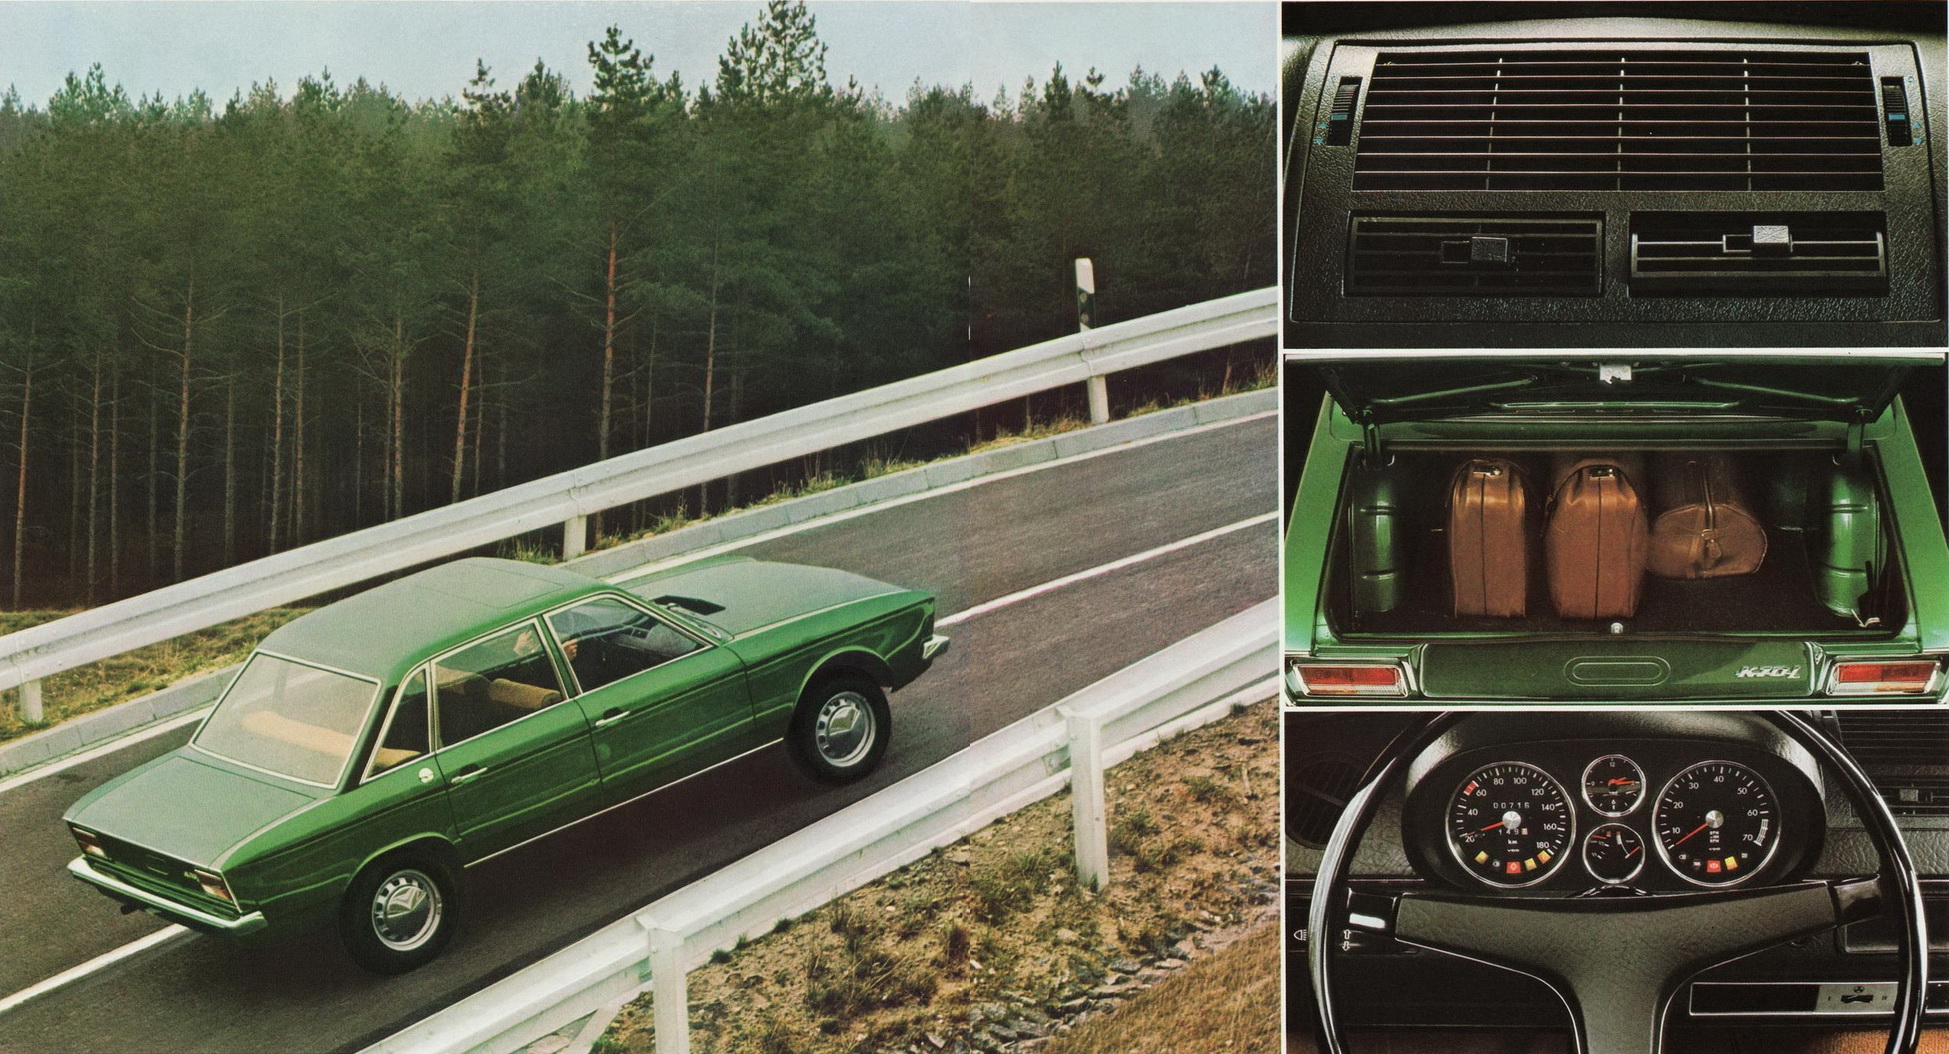 Volkswagen K70 1970-1975